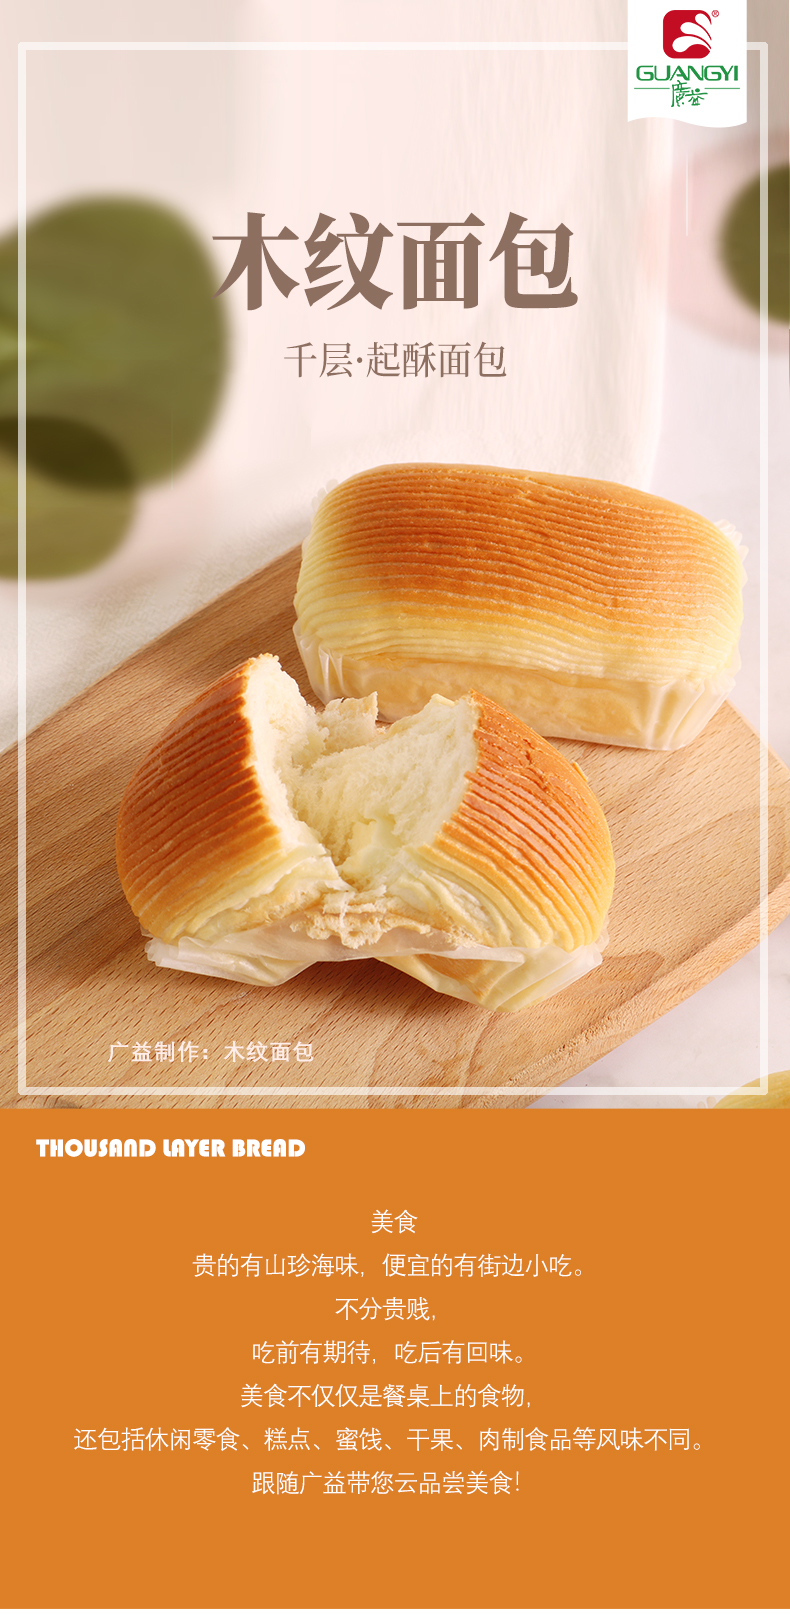 开酥面包(木纹面包)长图_01.jpg